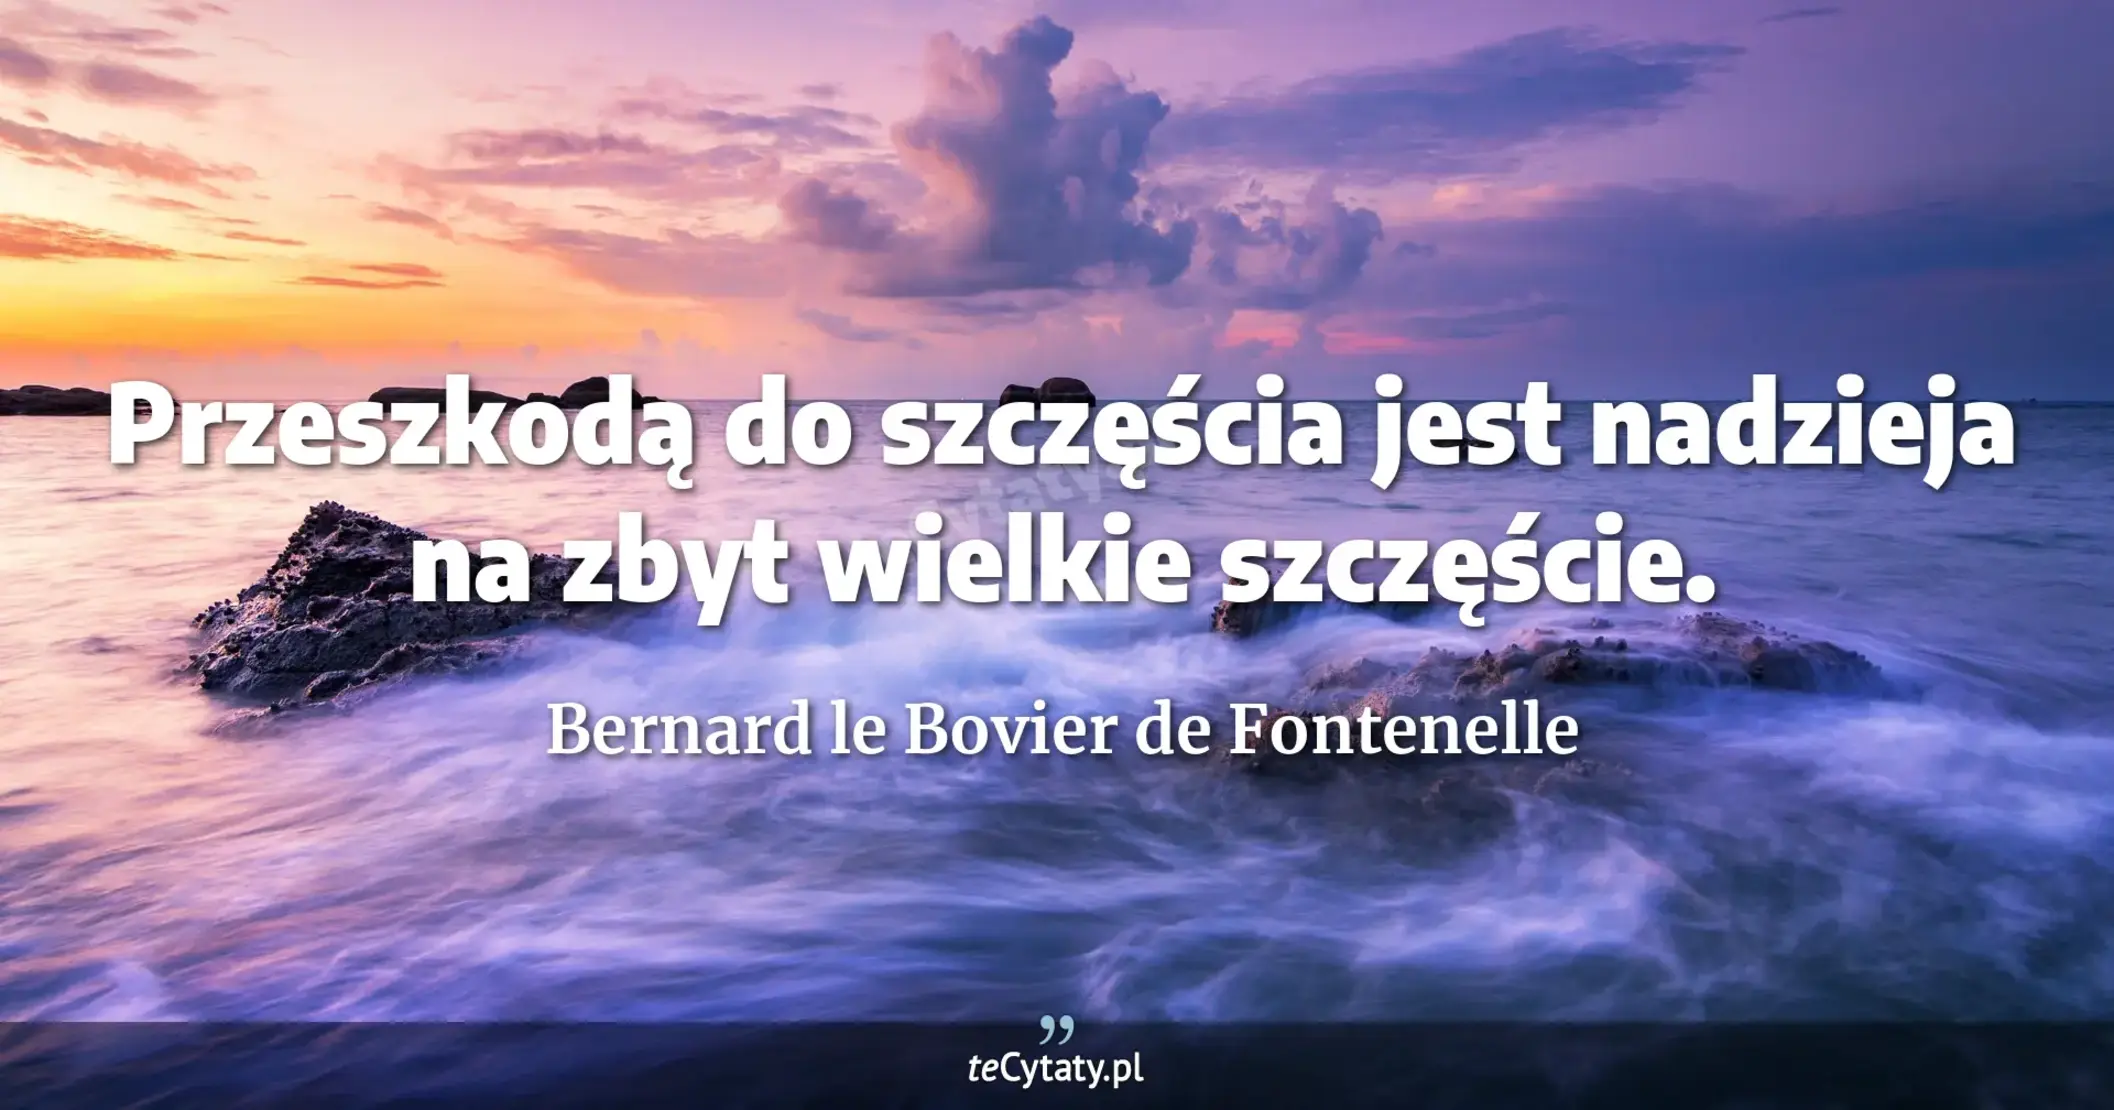 Przeszkodą do szczęścia jest nadzieja na zbyt wielkie szczęście. - Bernard le Bovier de Fontenelle